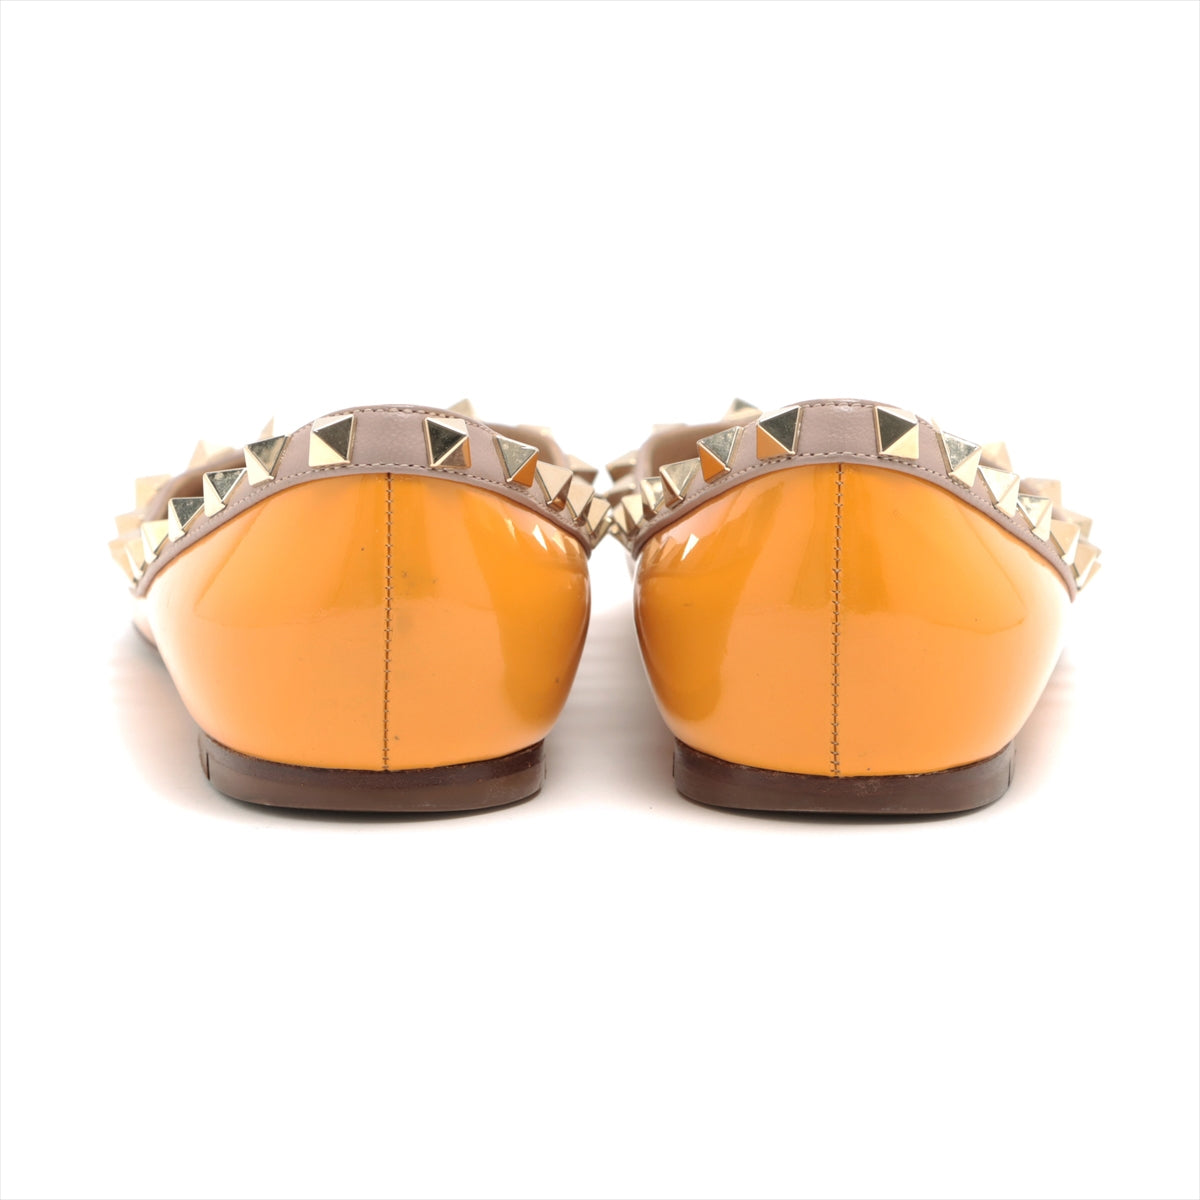 Valentino Garavani Patent leather Pumps 36 Ladies' Orange